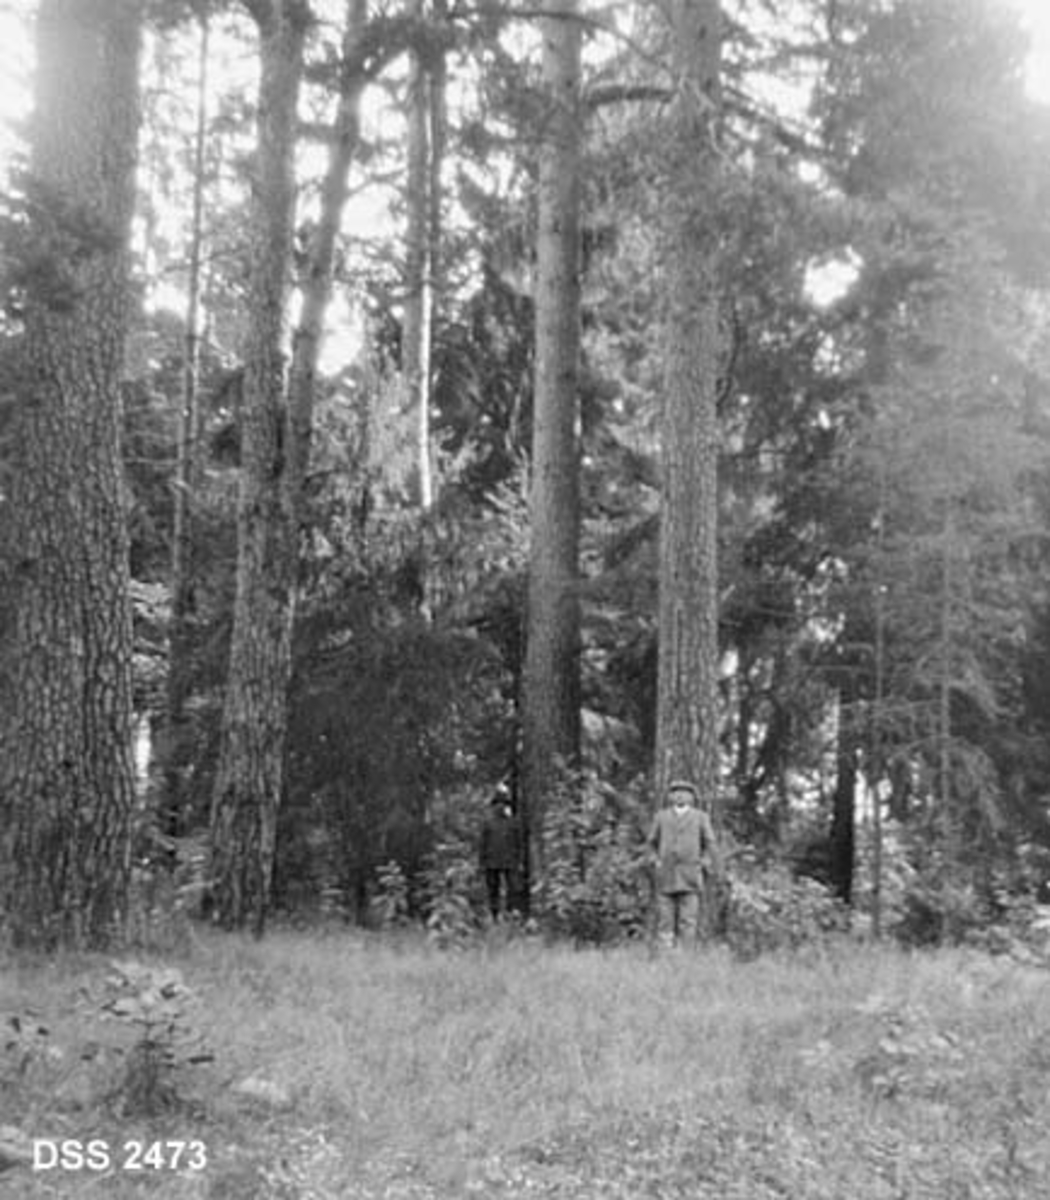 Store furutrær i skogen til Karljohansvern (orlogsverftet i Horten).  Grasslette i forgrunnen, grove, rettvokste furustammer som på kartotekkortet er karakterisert som "Furumaster".  I bakgrunnen grantrær av varierende størrelse. 